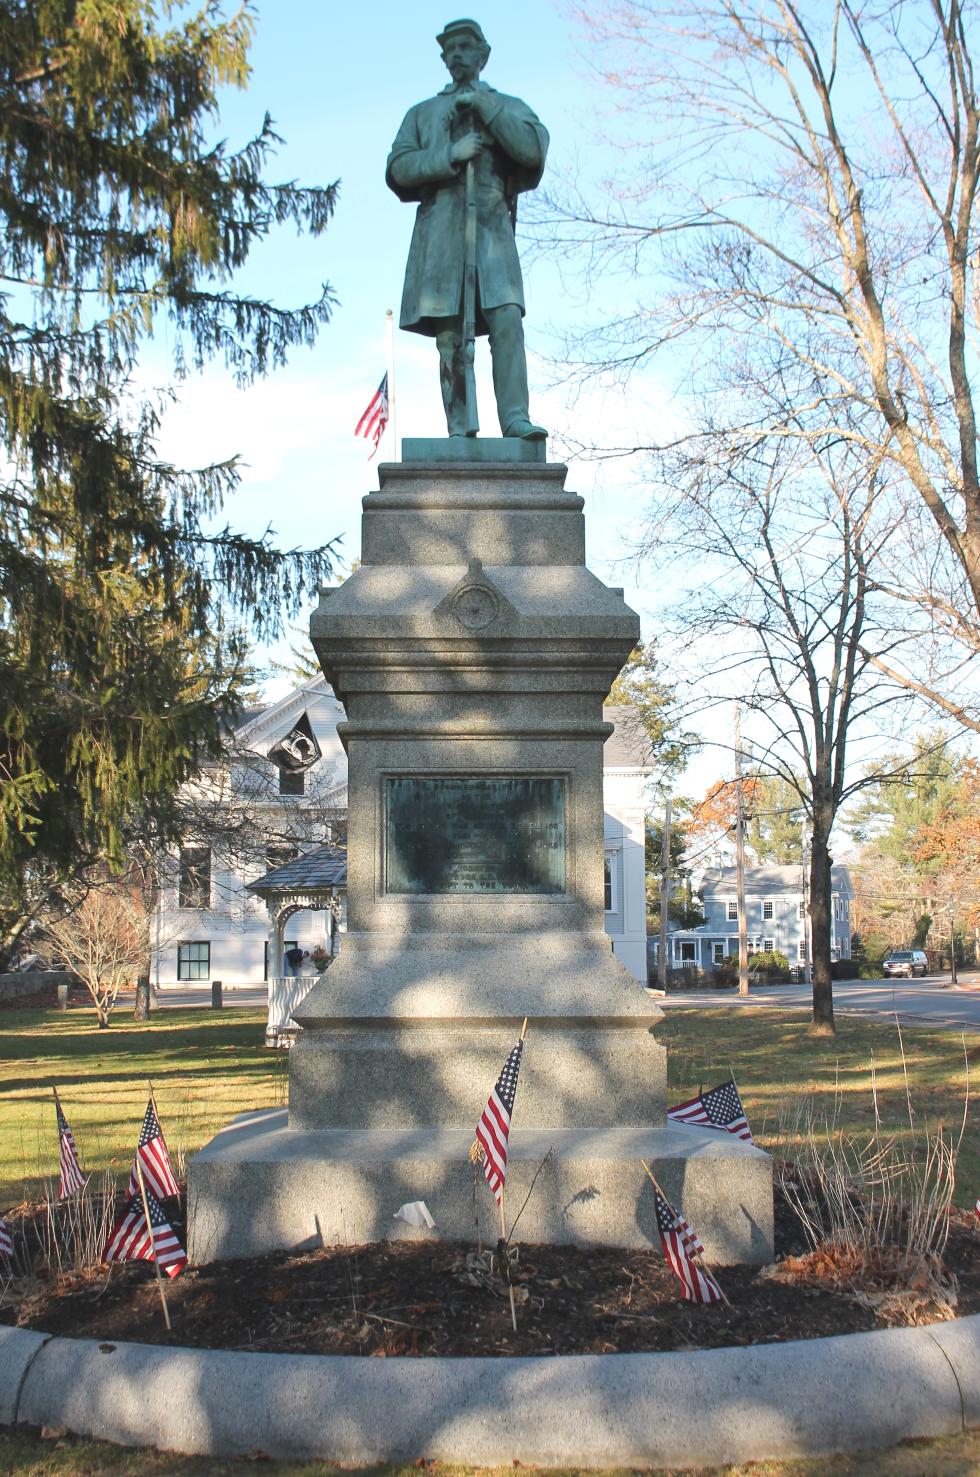 Kingston Massachusetts Civil War Veterans Memorial